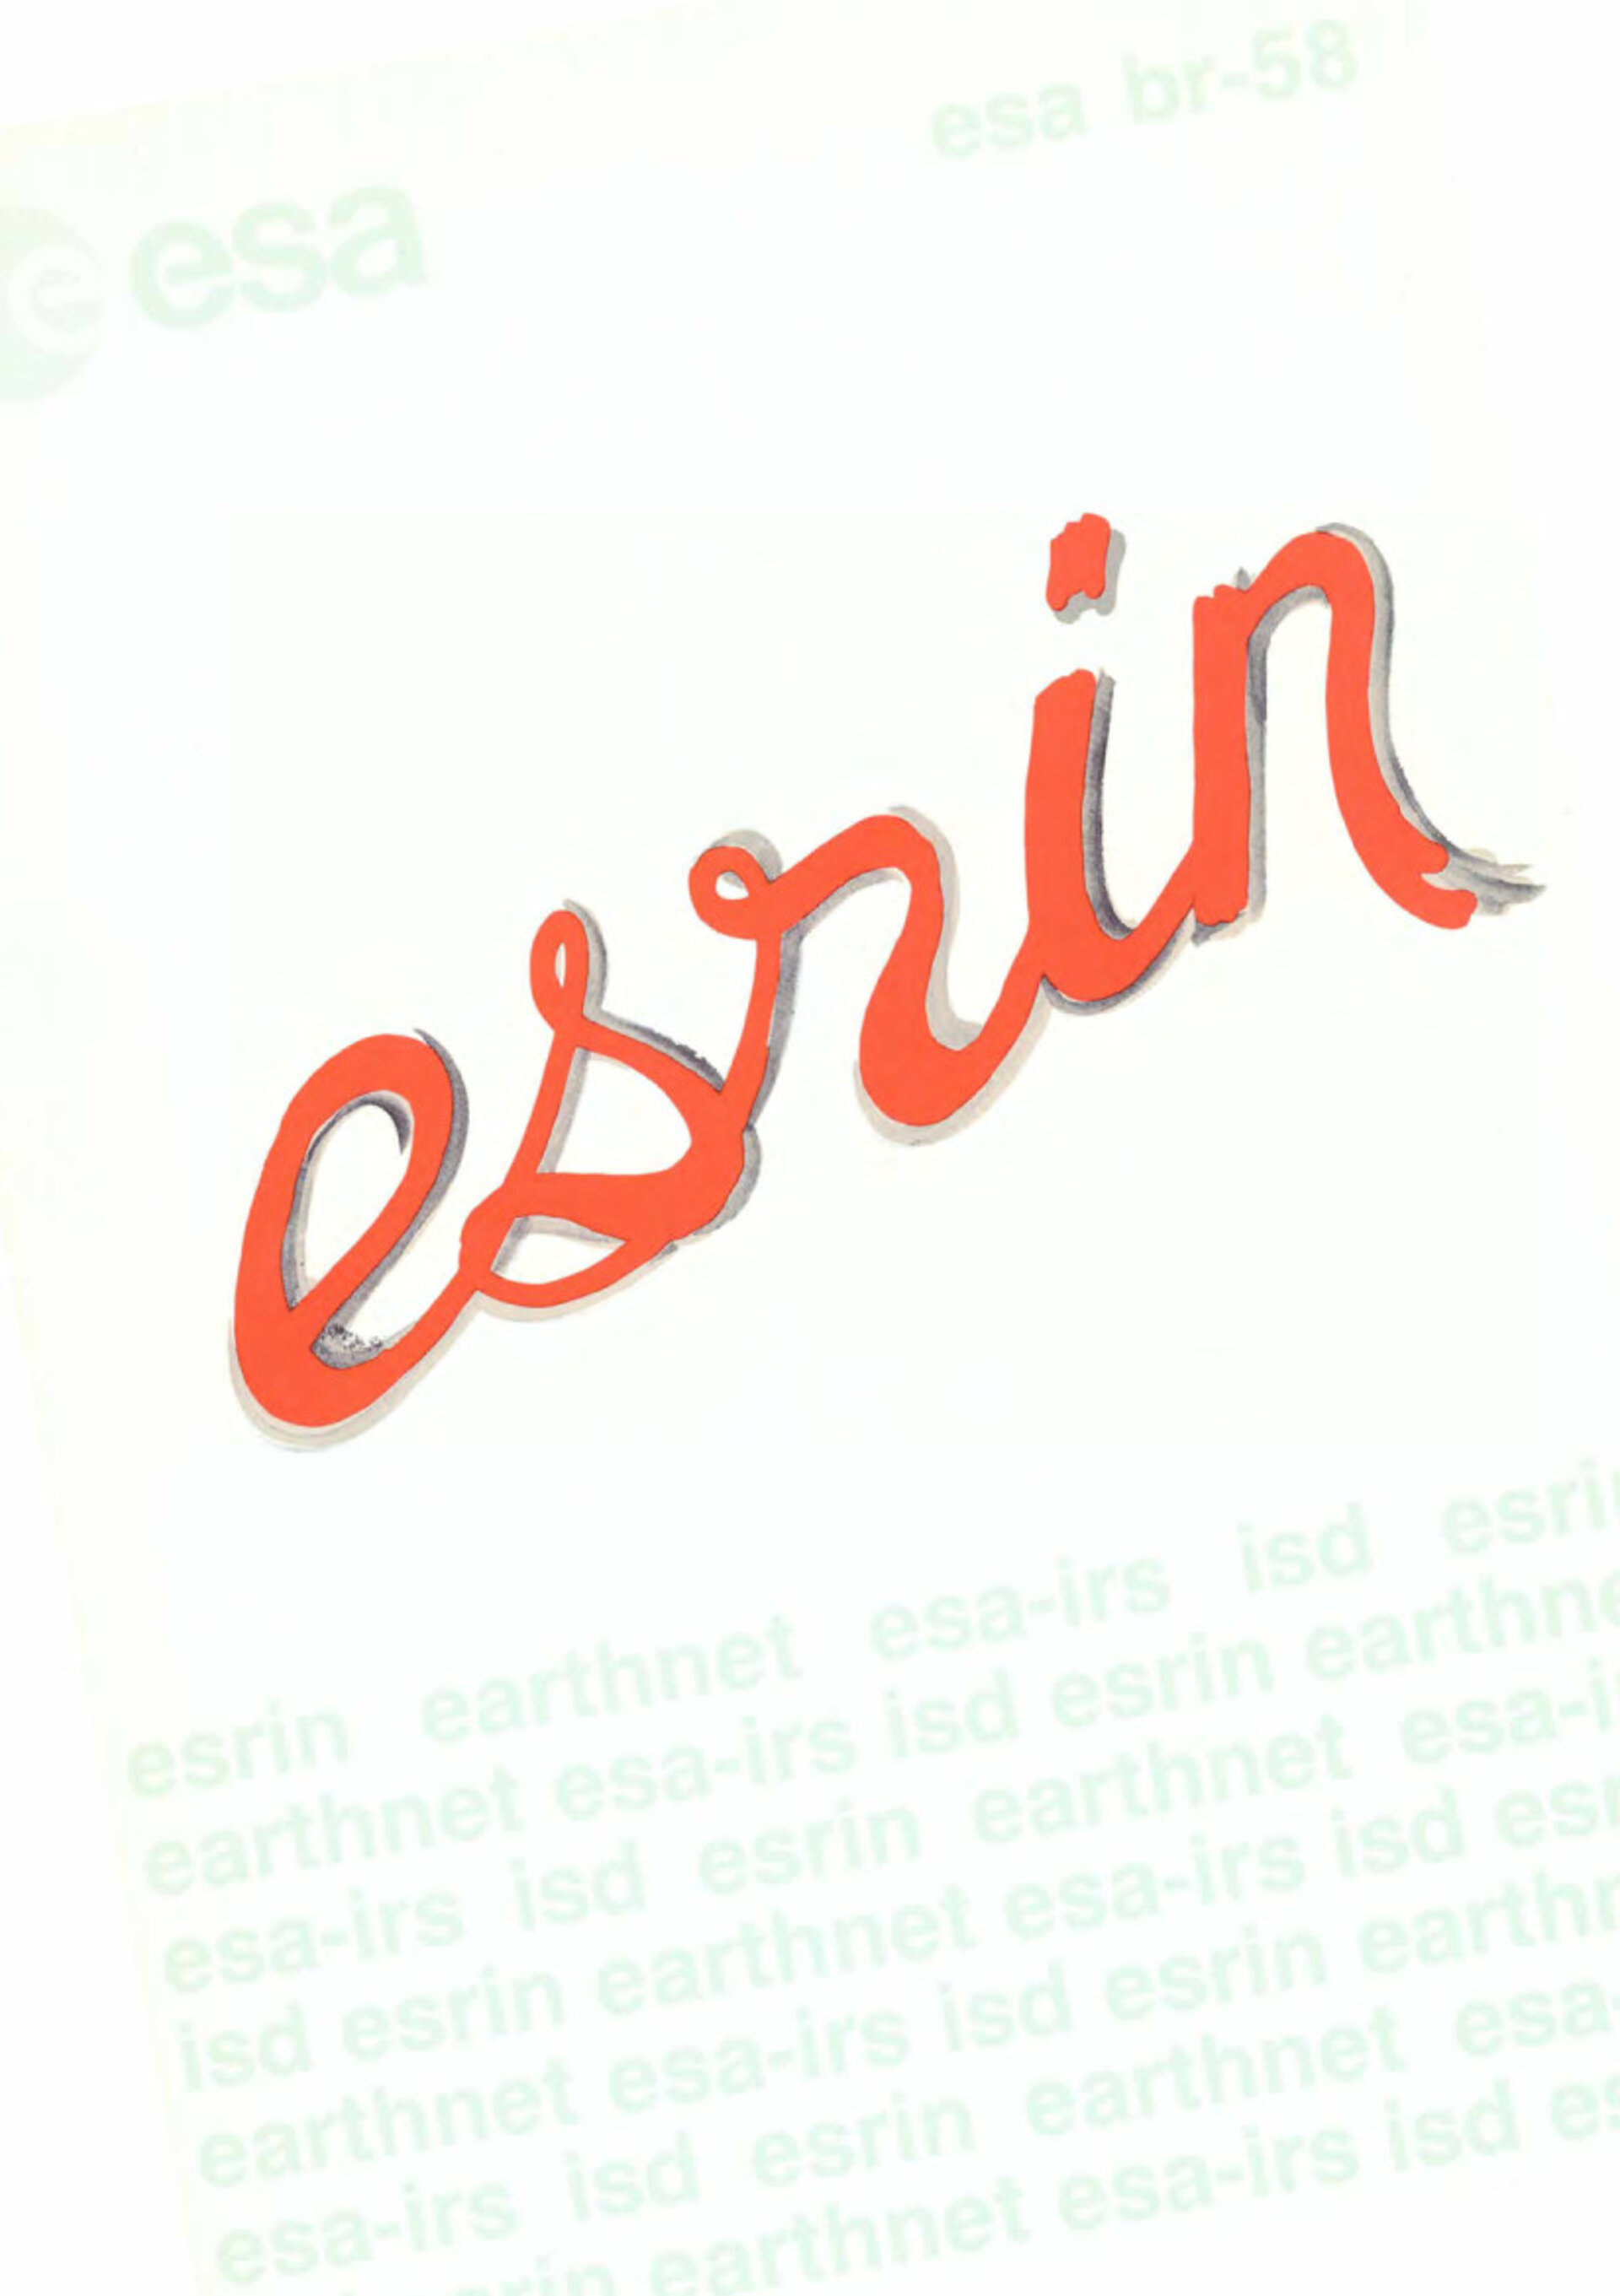 ESA BR-058 ESRIN